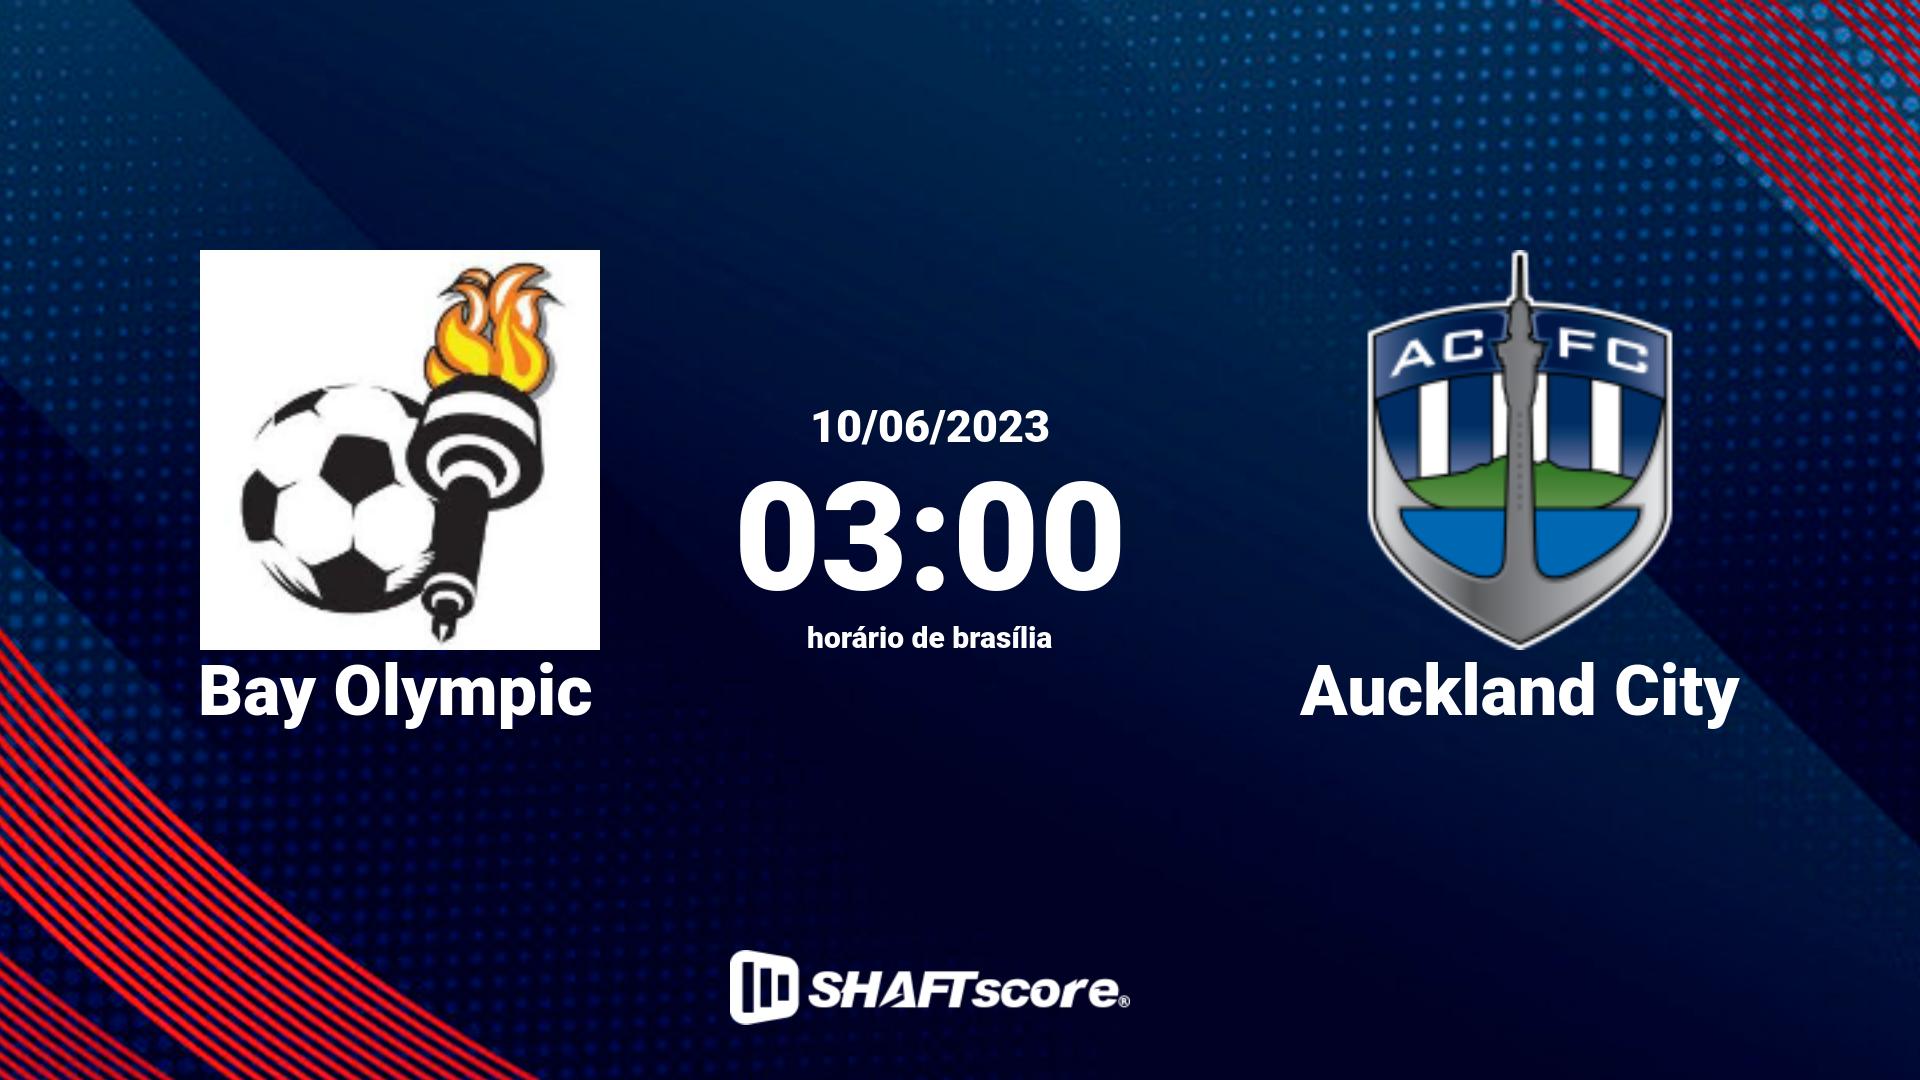 Estatísticas do jogo Bay Olympic vs Auckland City 10.06 03:00